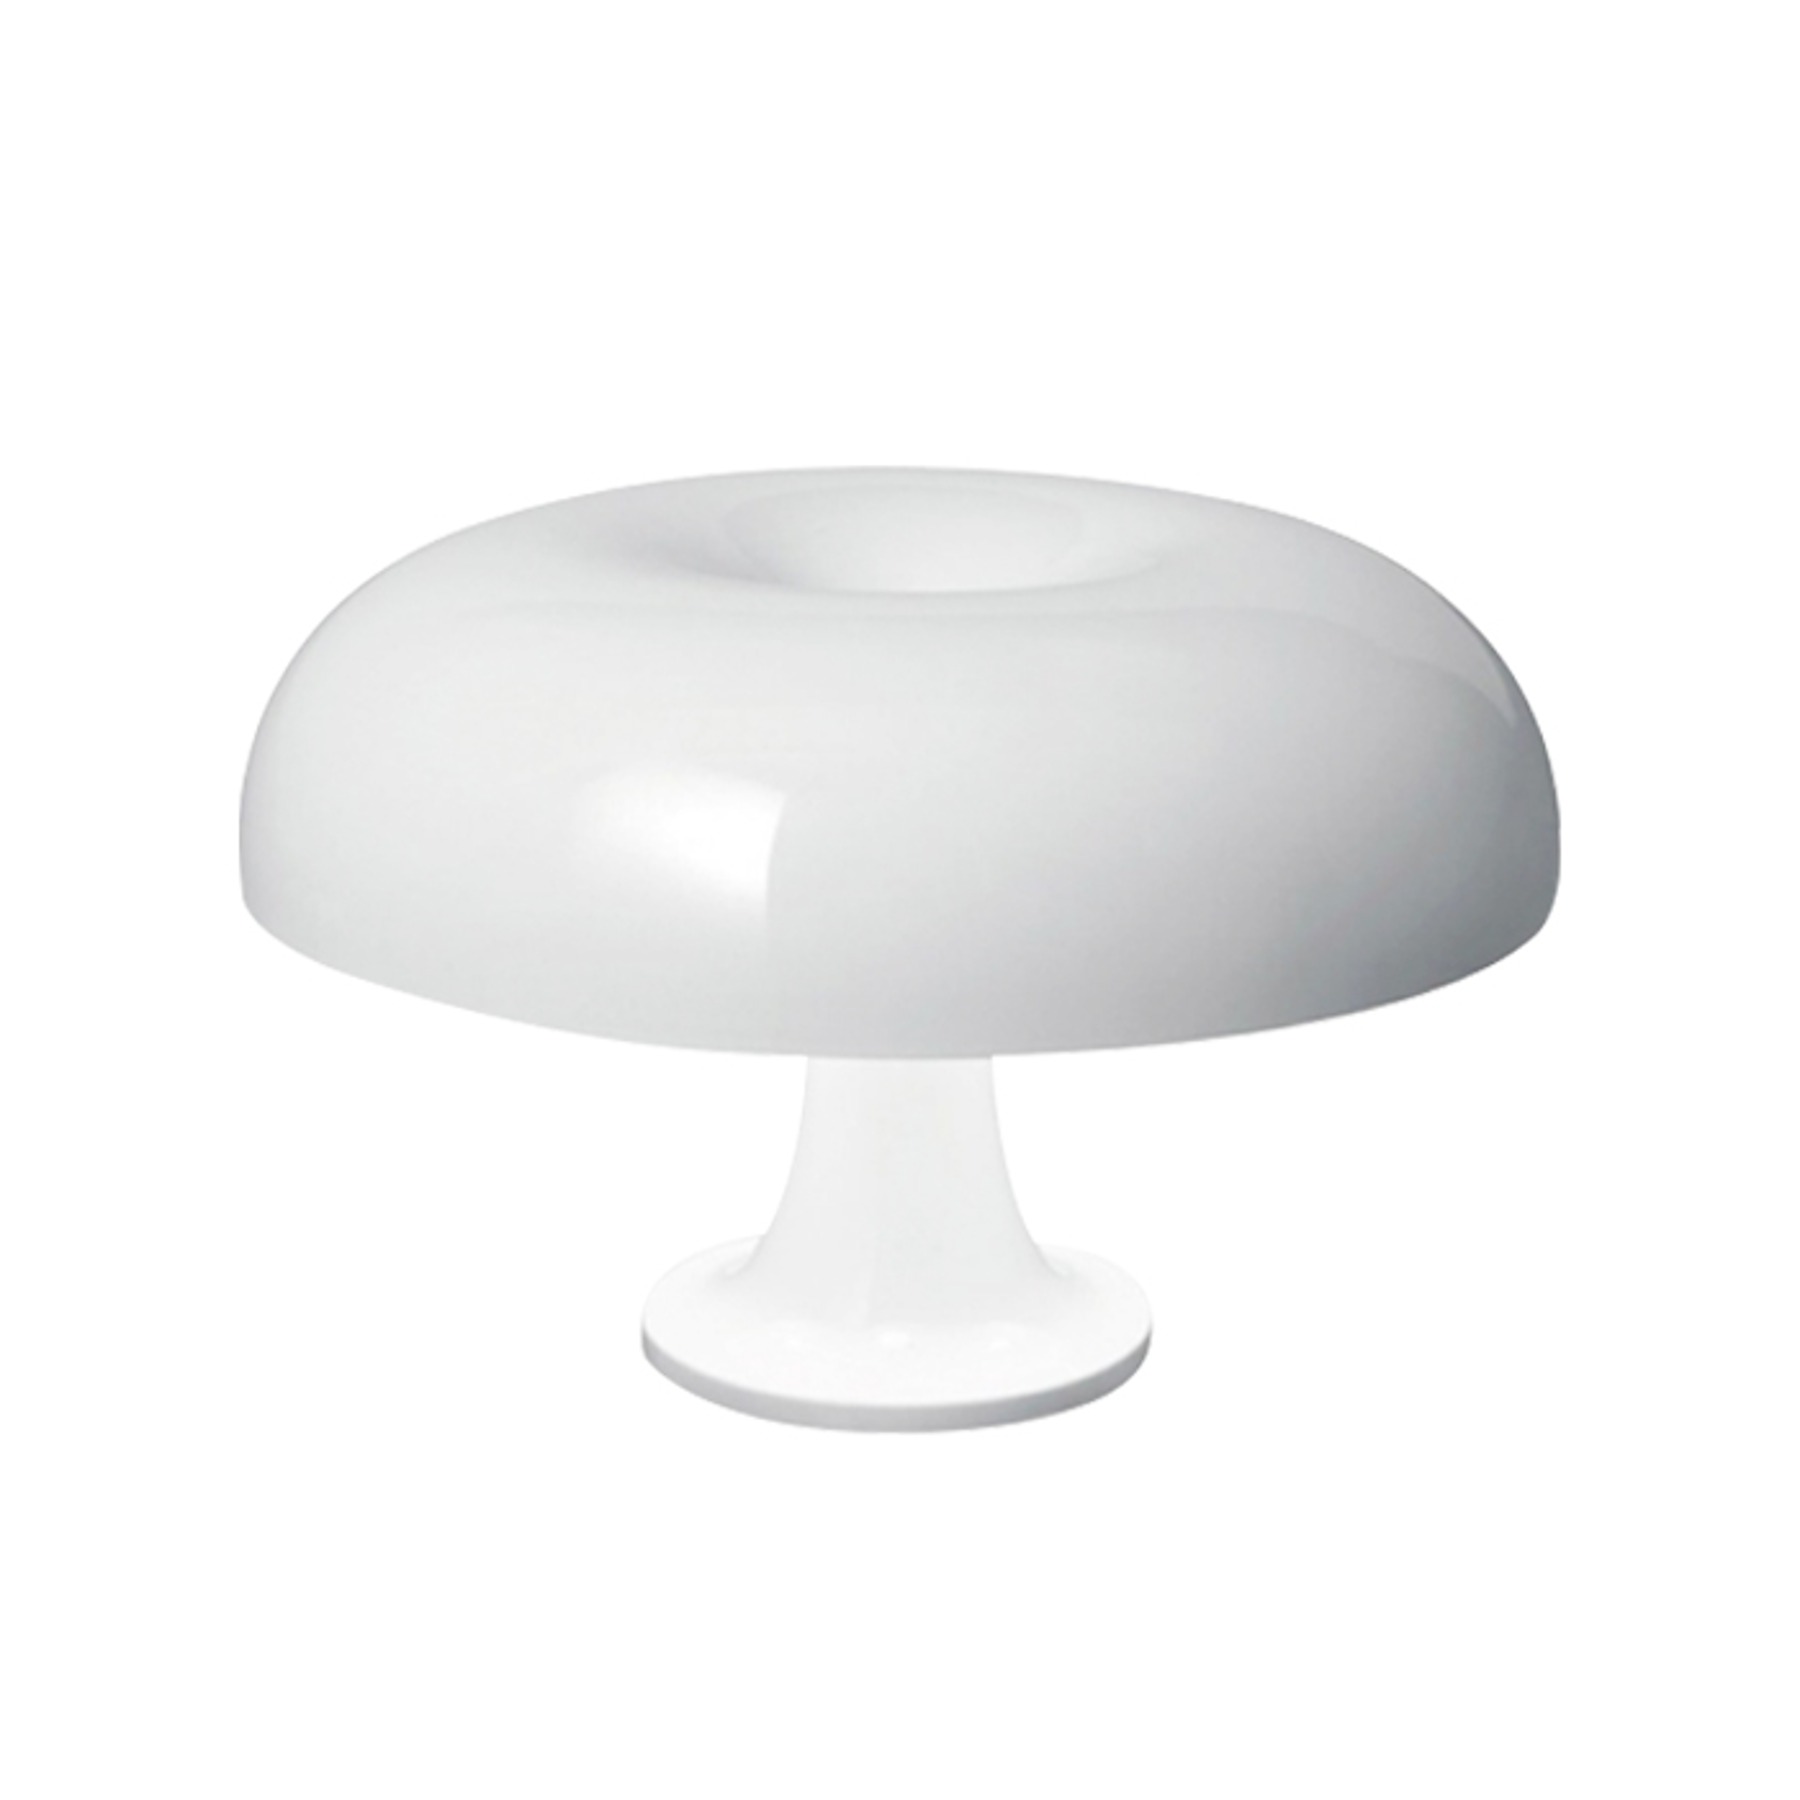 Nessino Table Lamp (White) 네씨노 테이블 램프 (화이트)